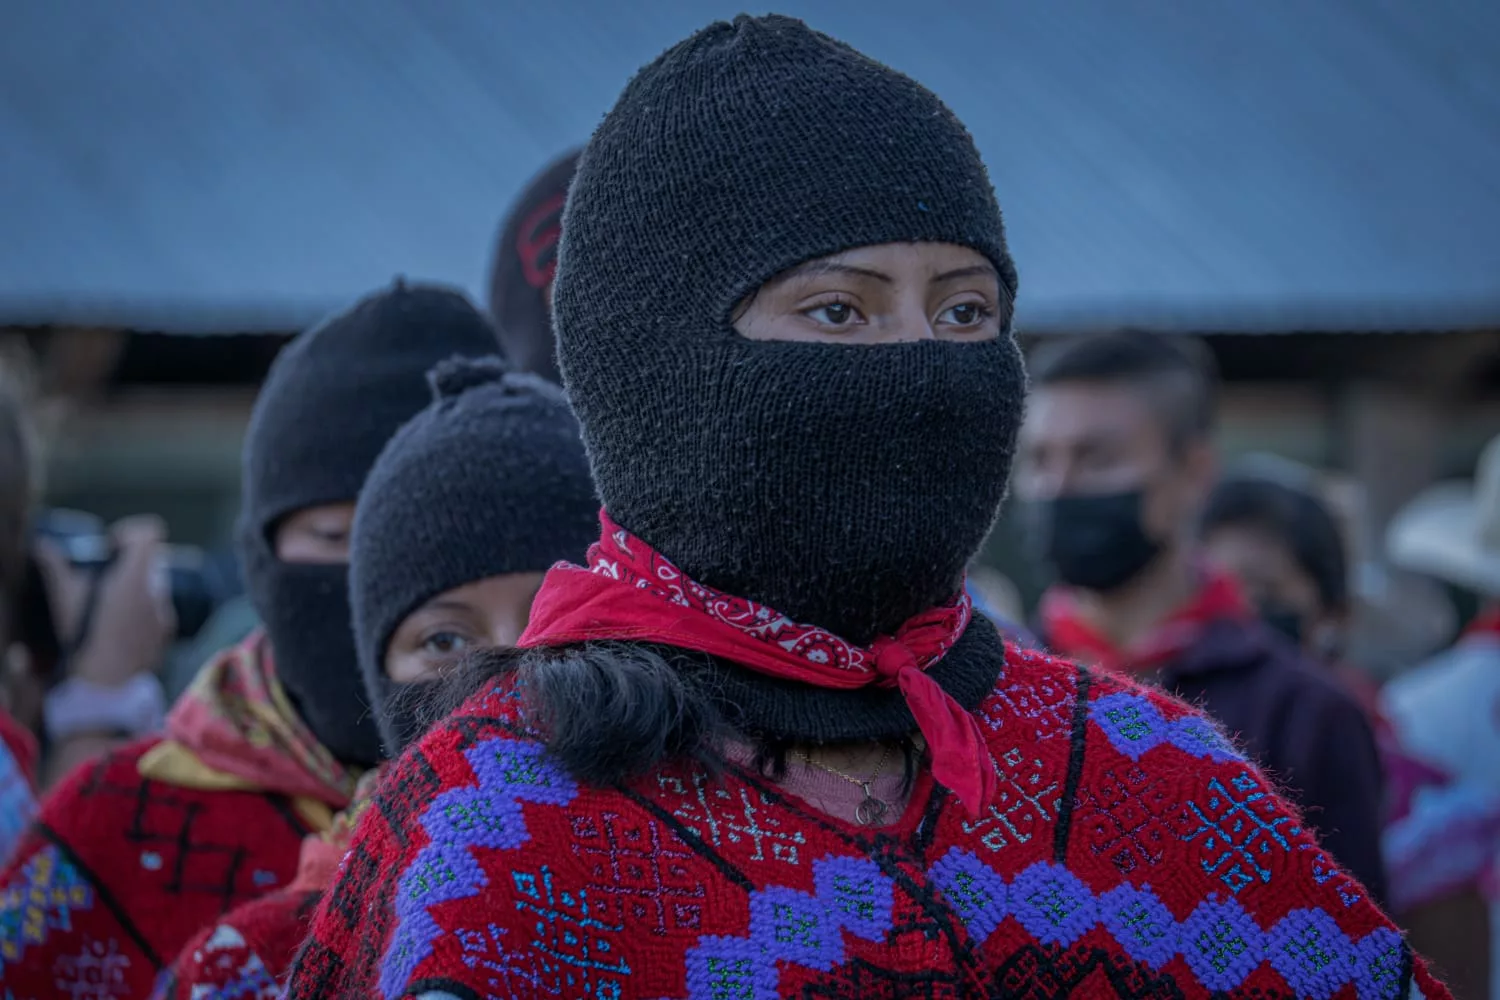 30 años del levantamiento zapatista: Un legado de resistencia y lucha por la autonomía